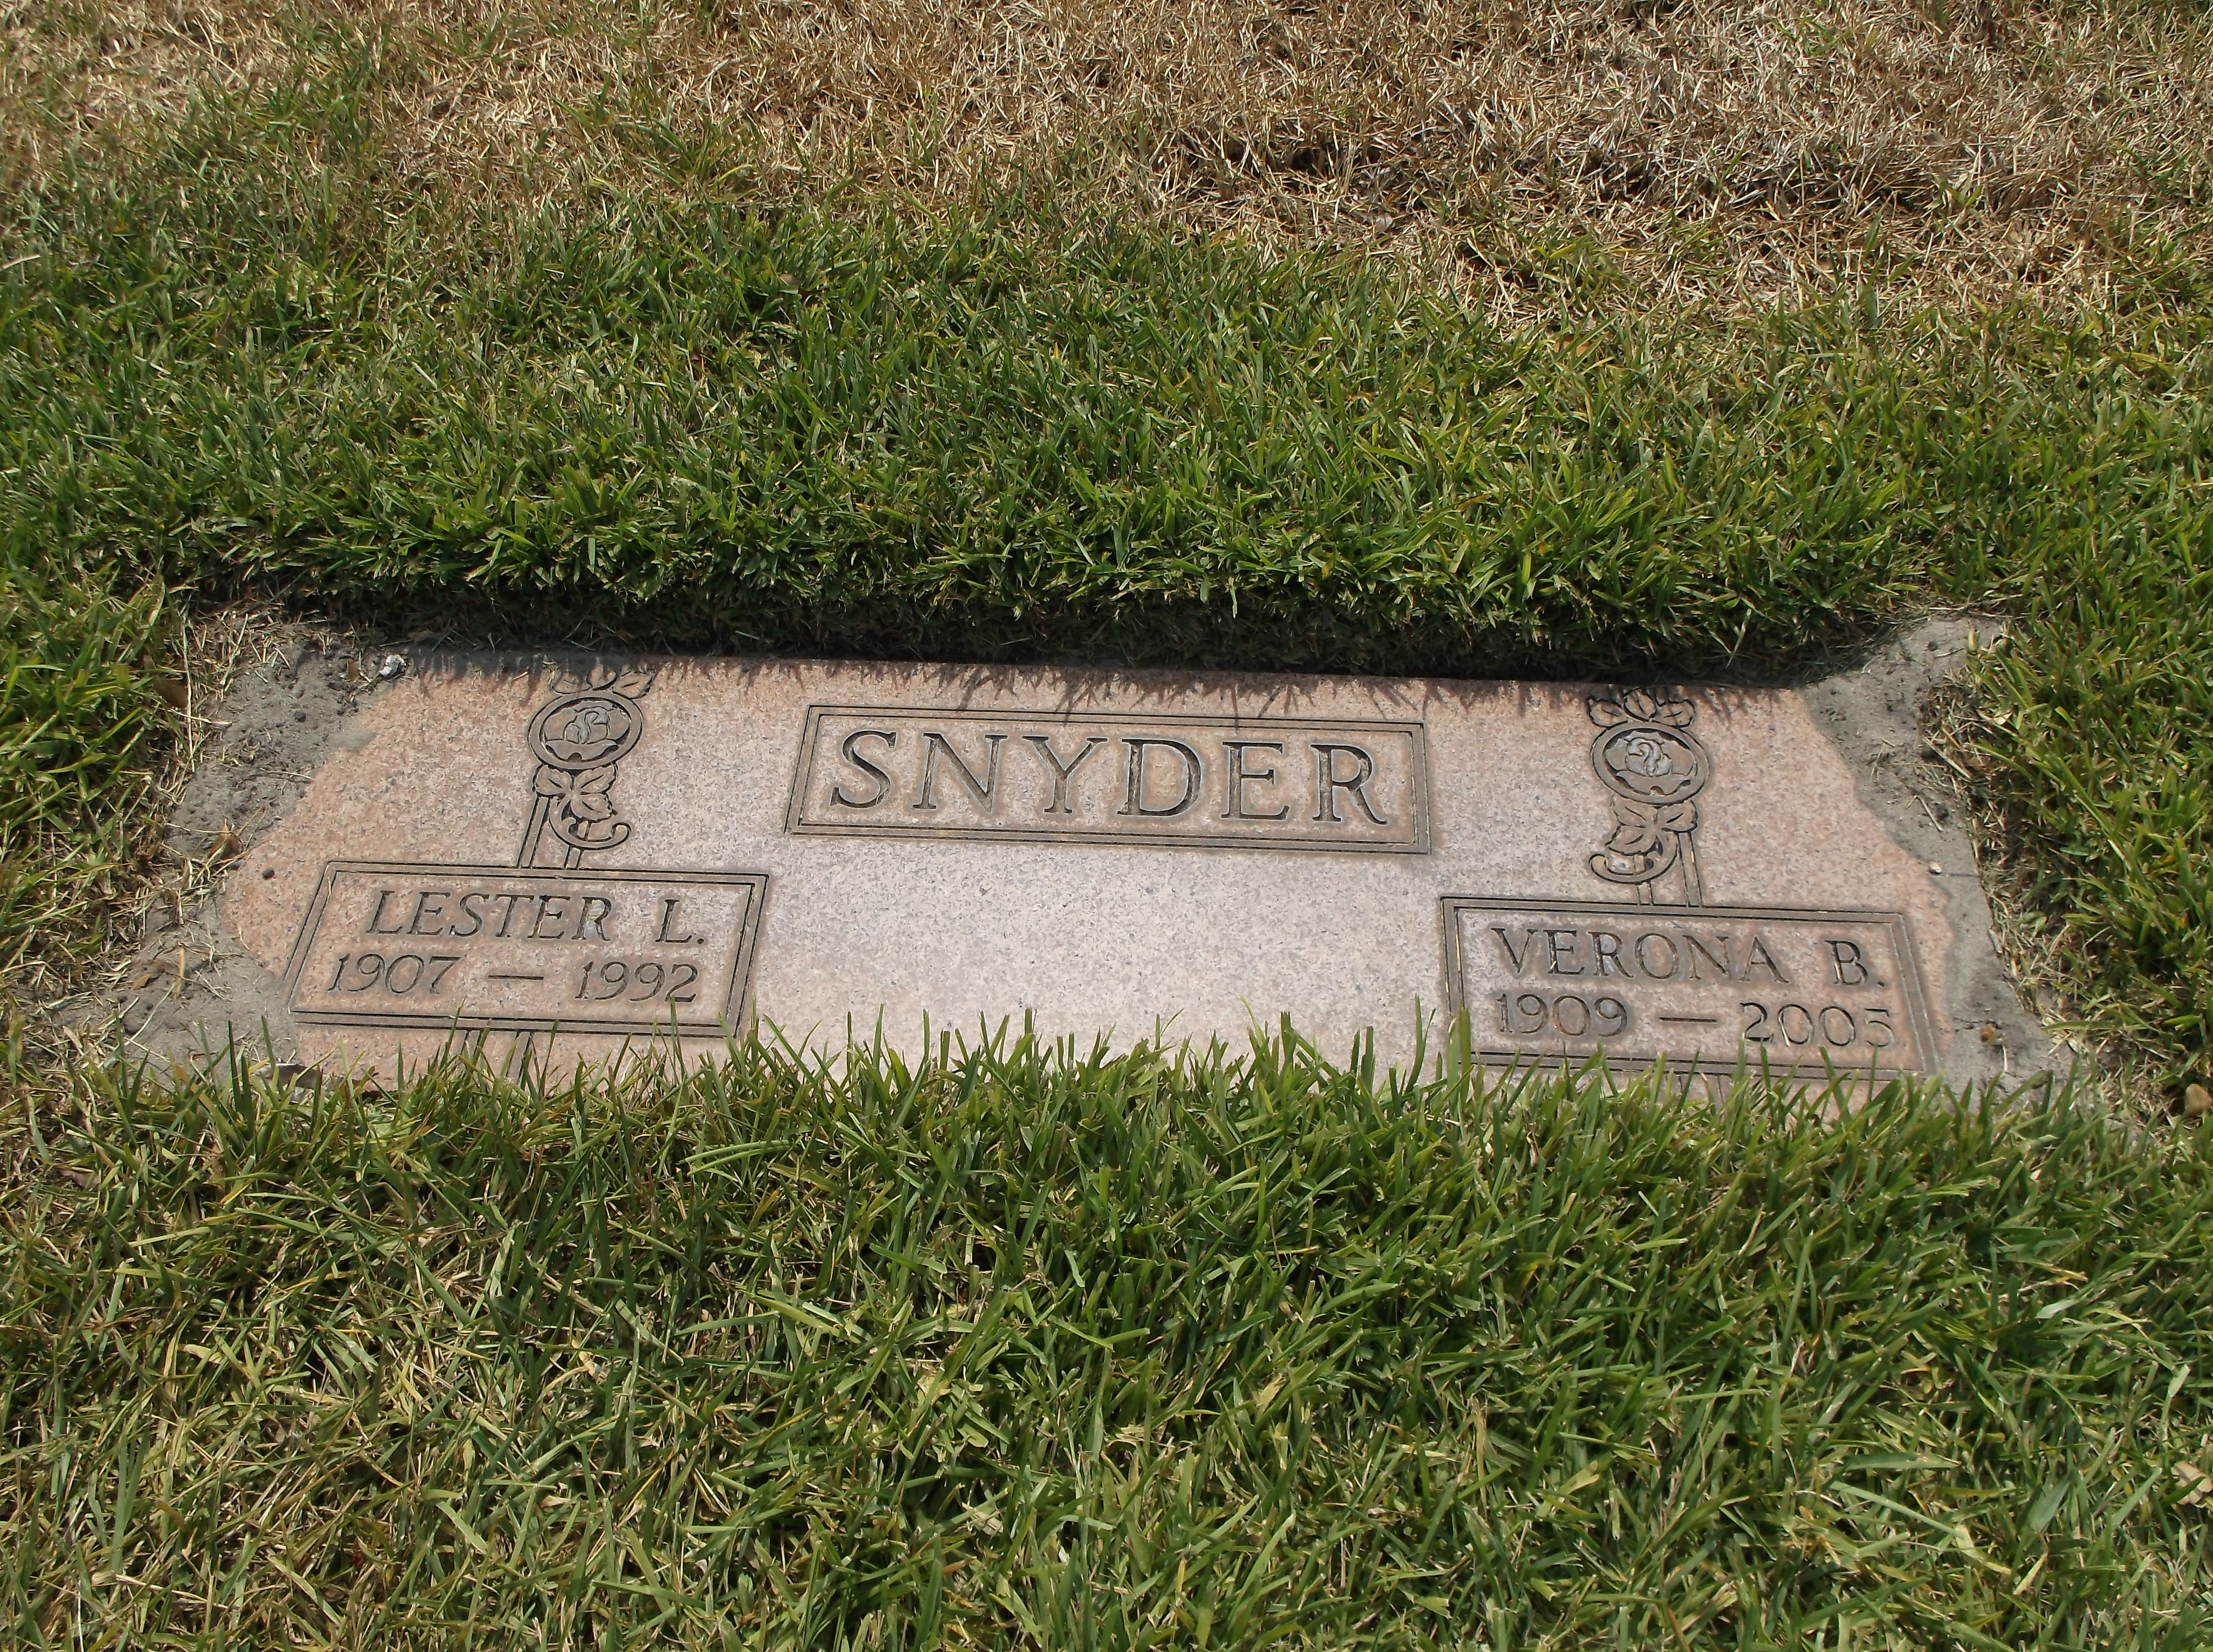 Verona B Snyder